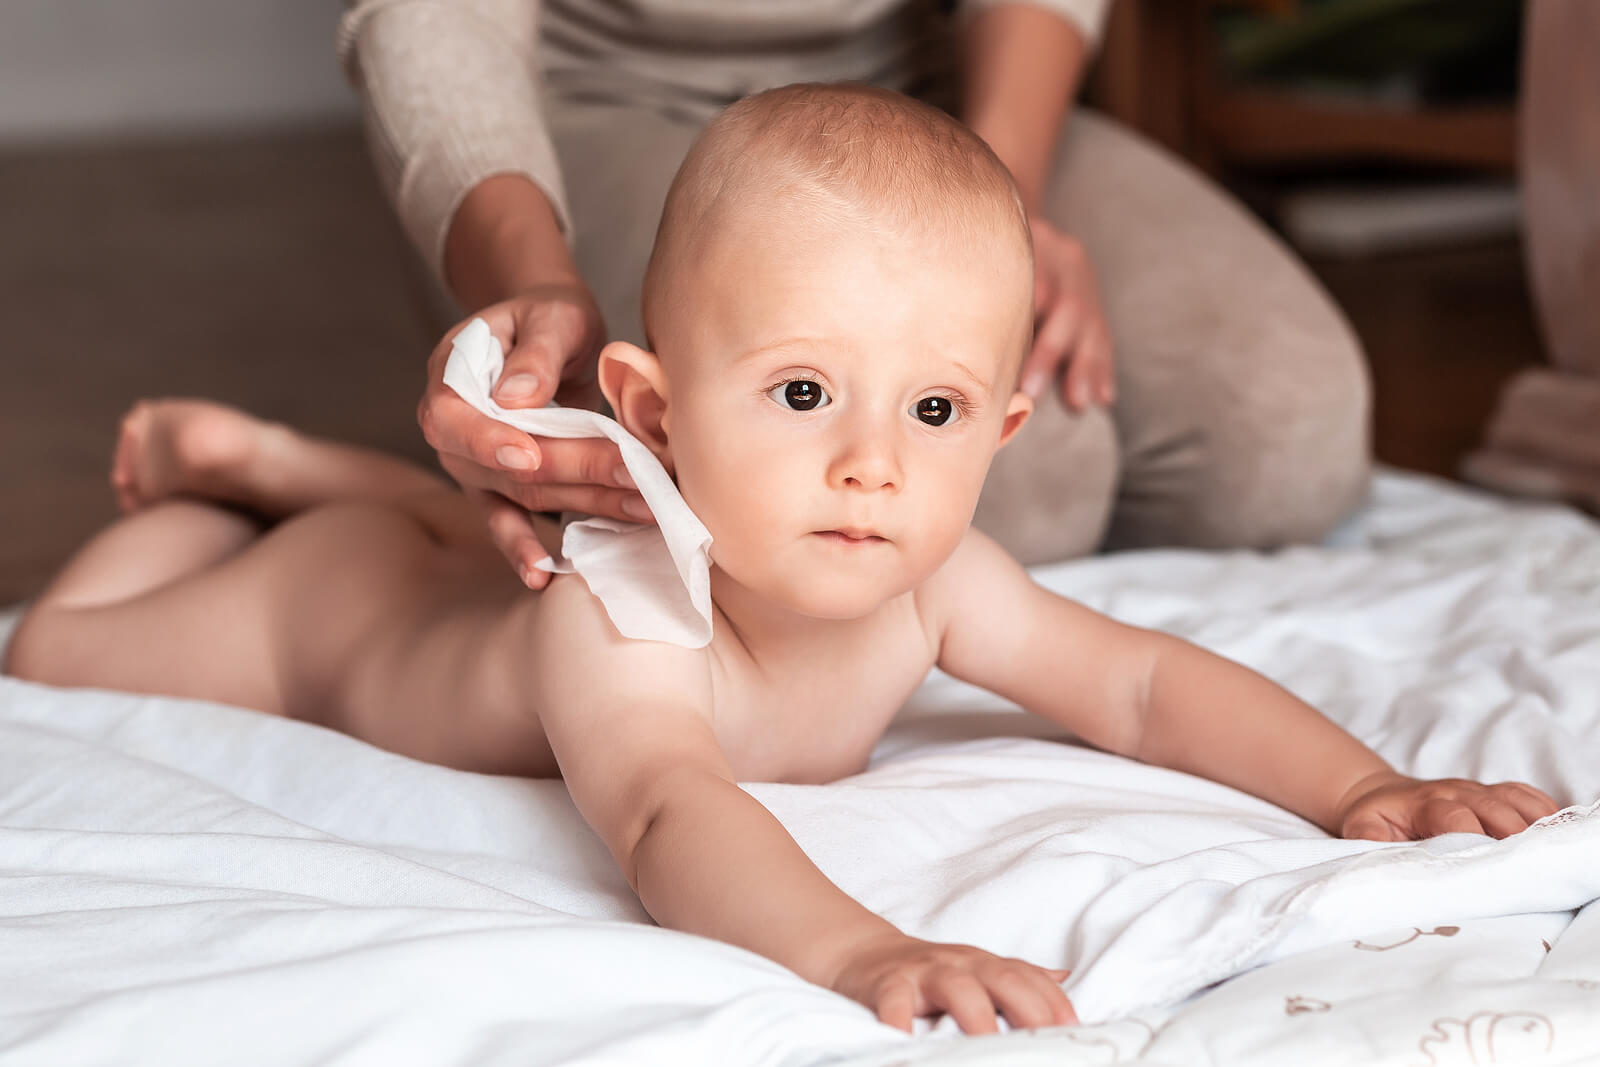 De sleutels om de huid van je baby gehydrateerd te houden